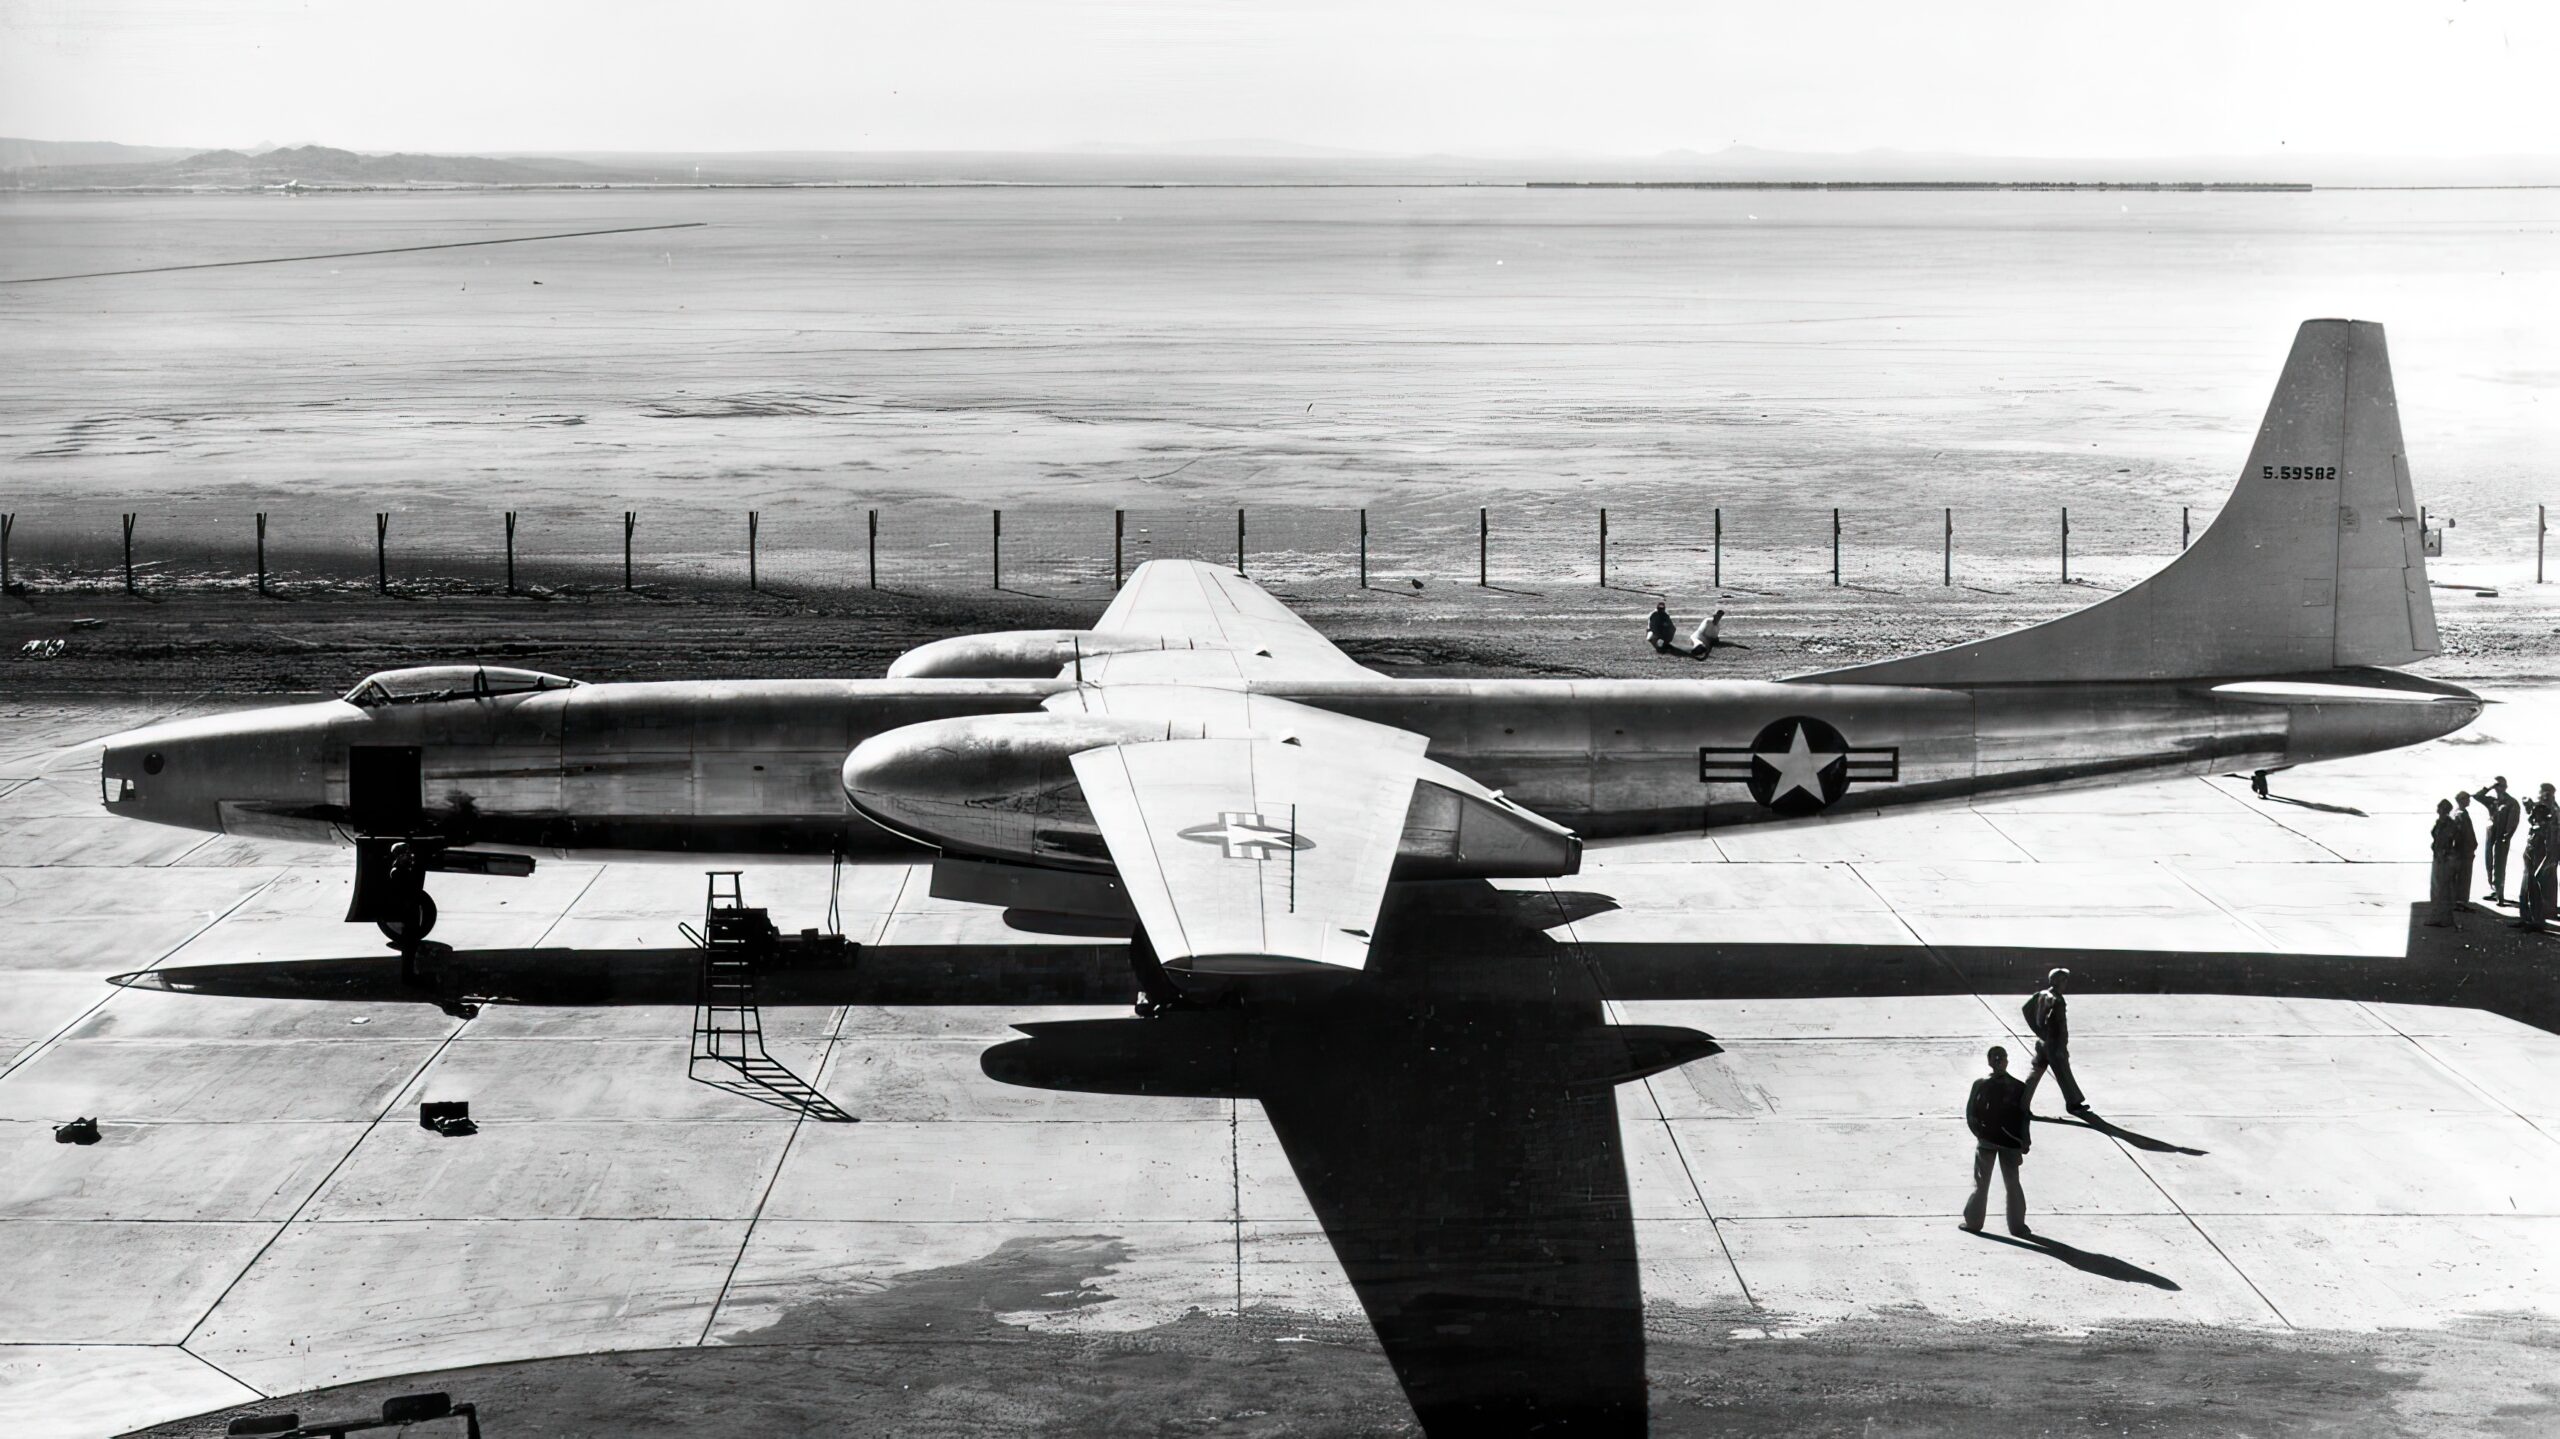 Convair XB-46